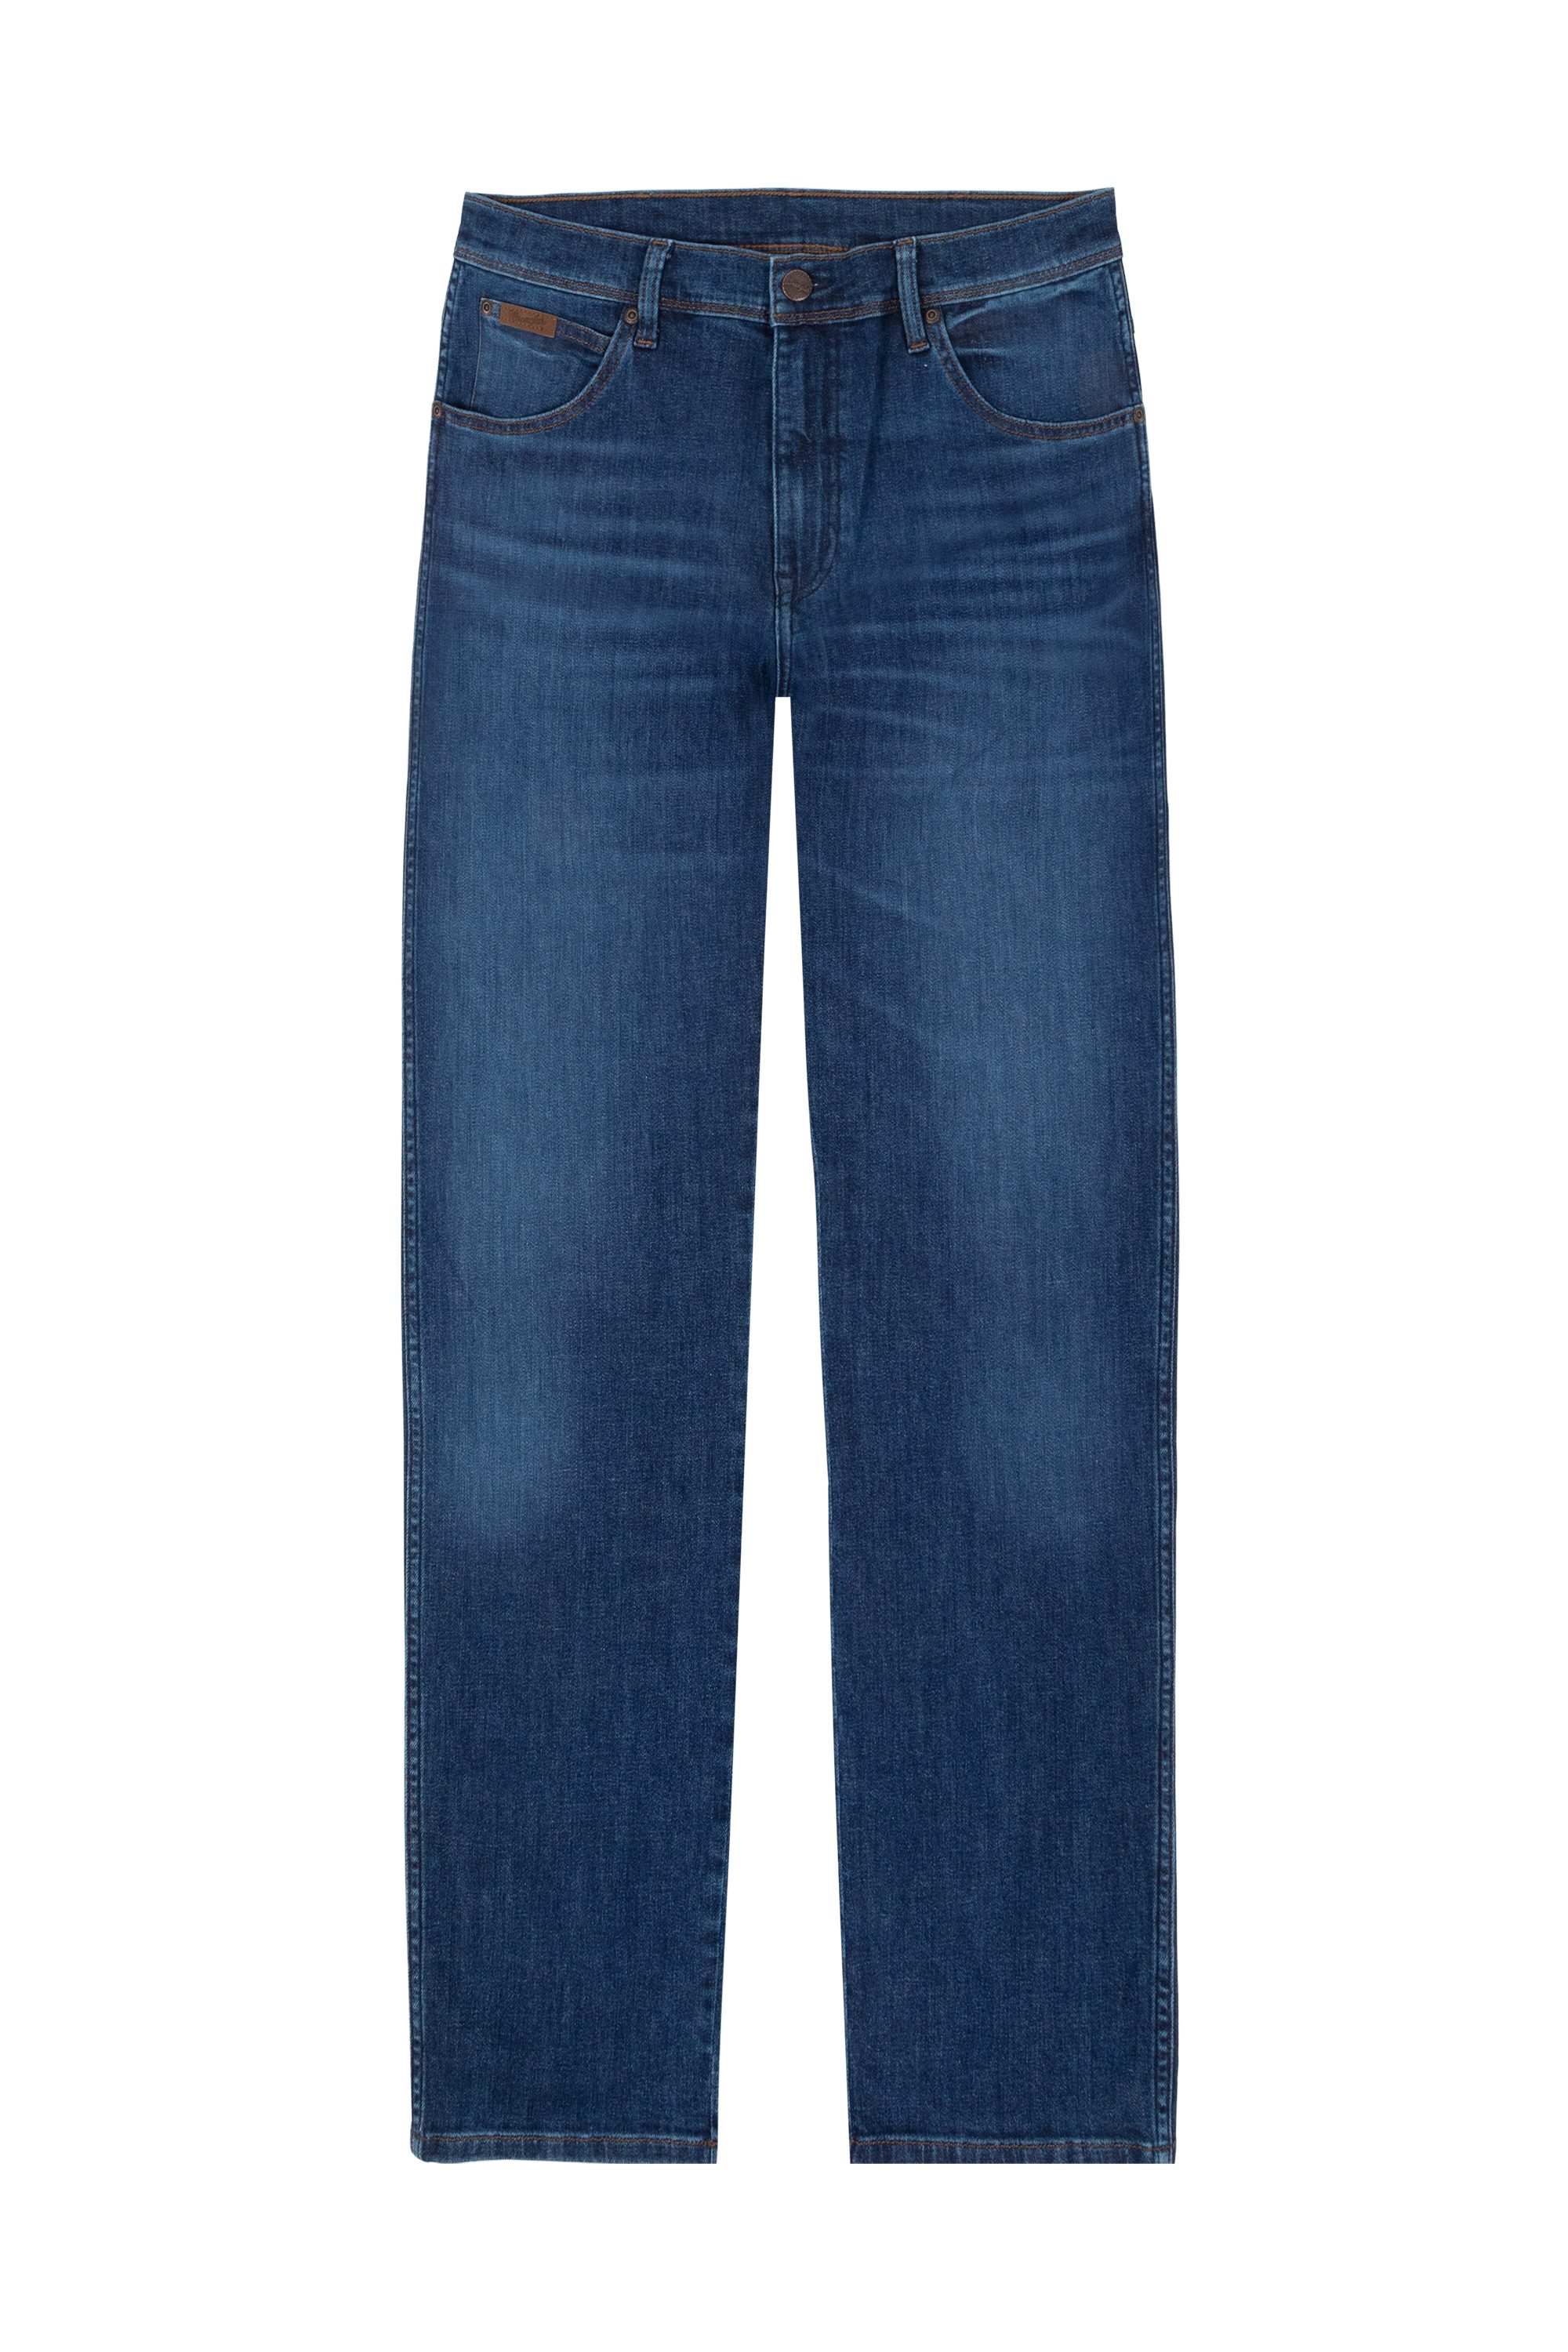 Wrangler 5-Pocket-Jeans WRANGLER TEXAS free W121YJZ99 way